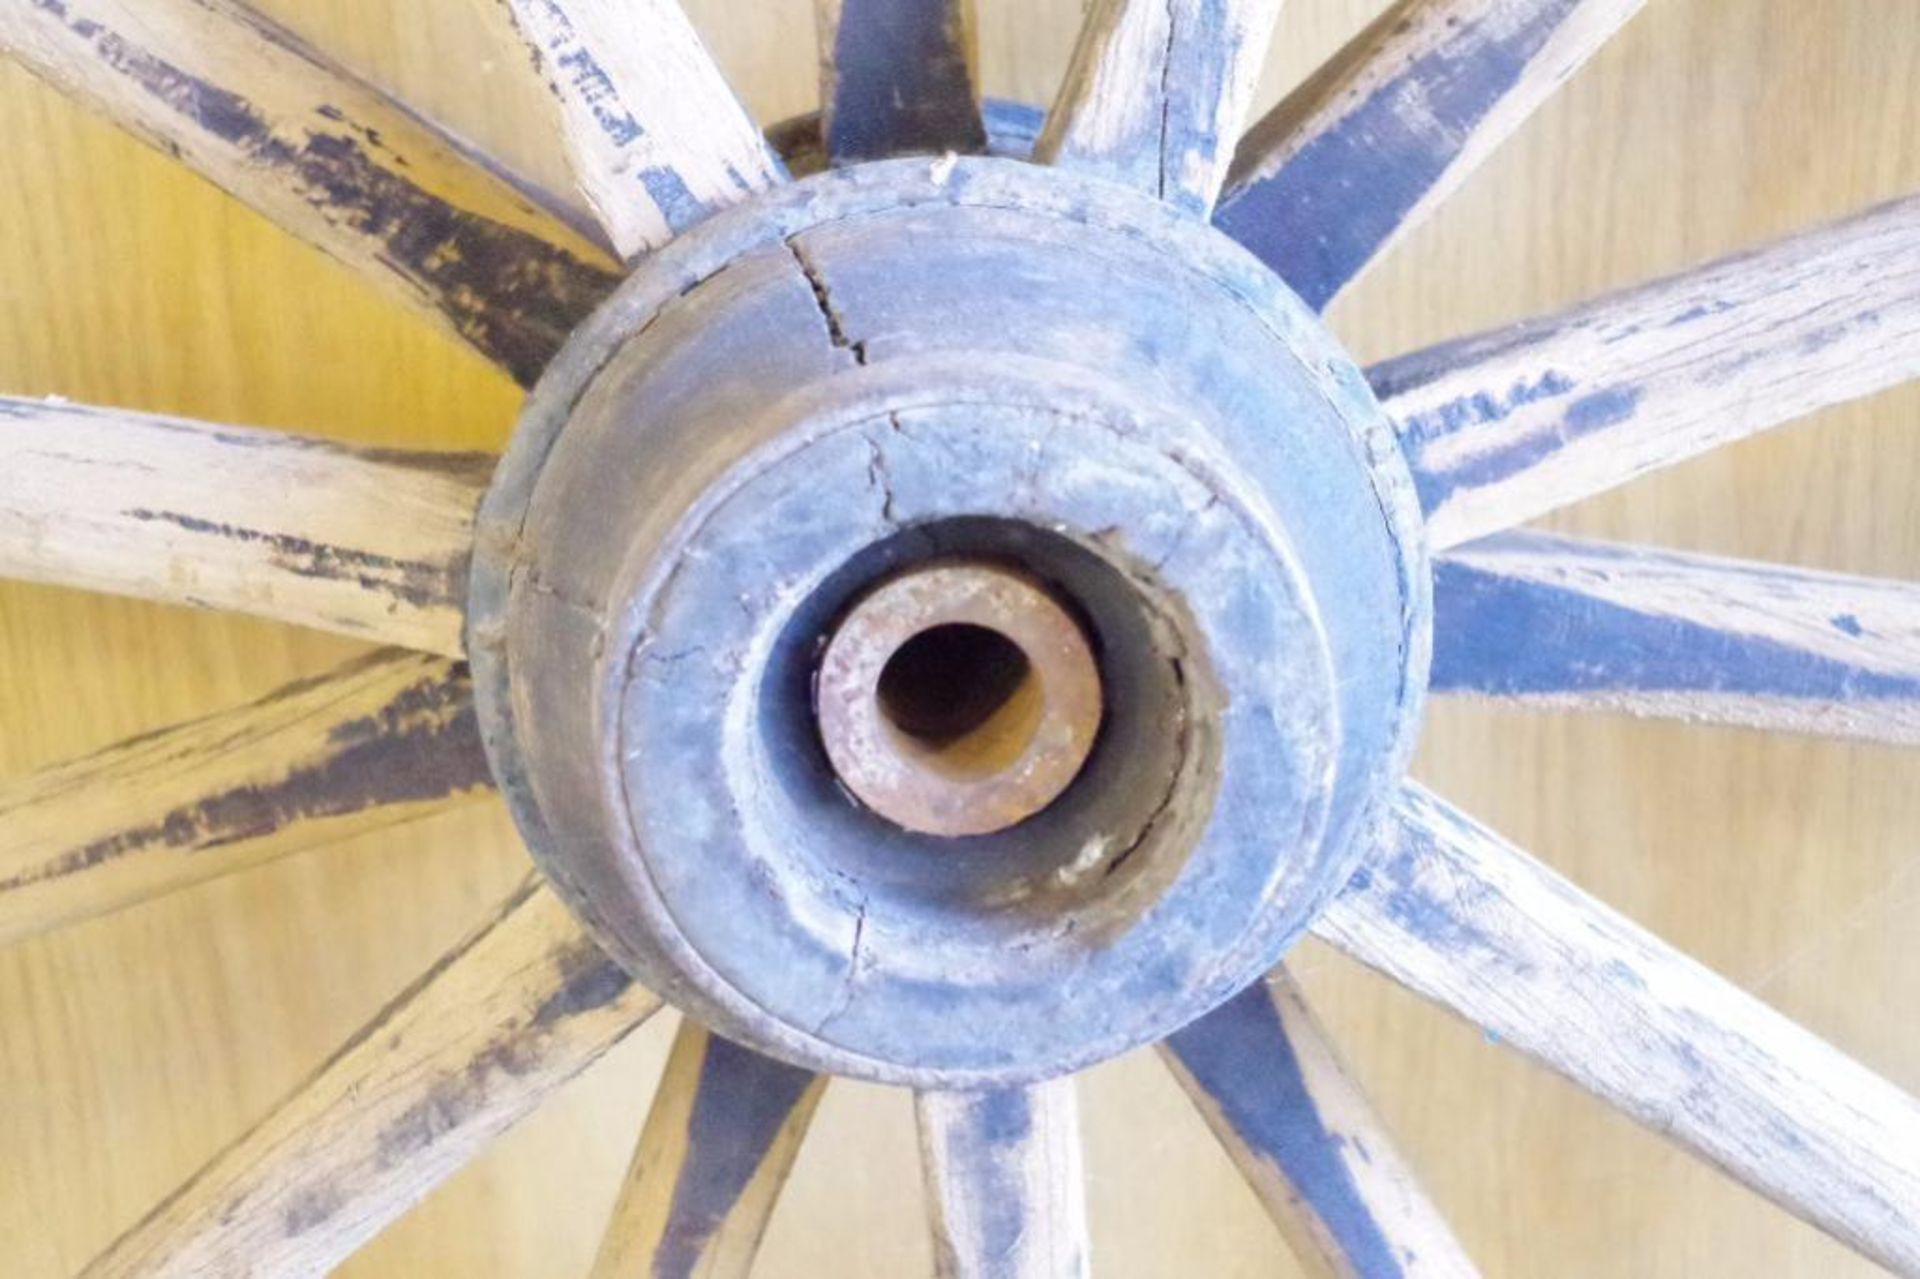 14-Spoke Large Wagon Wheel: 38" Diameter - Image 3 of 3